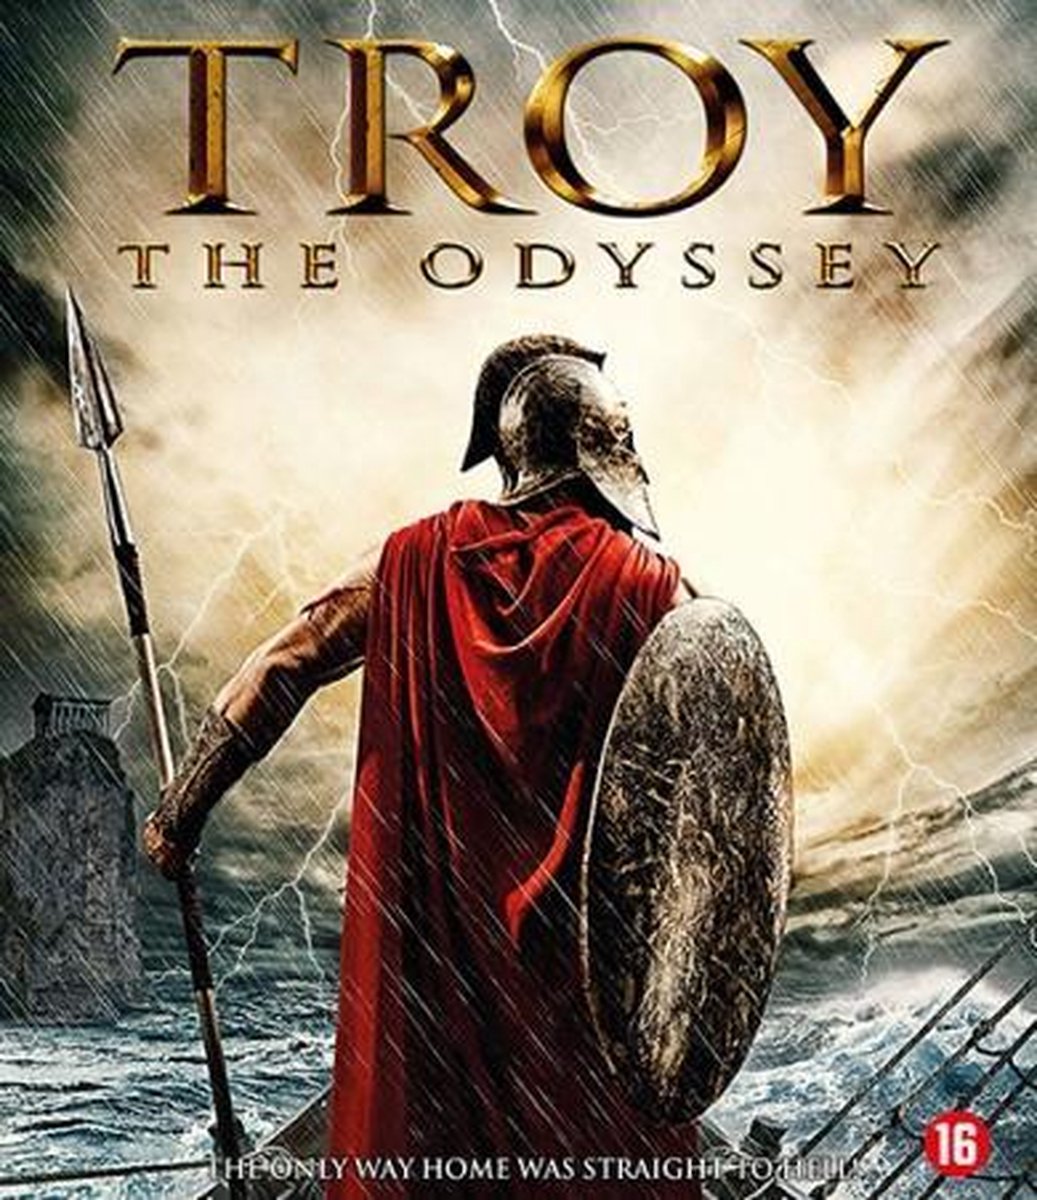 Troy The Odyssey (Blu-ray)